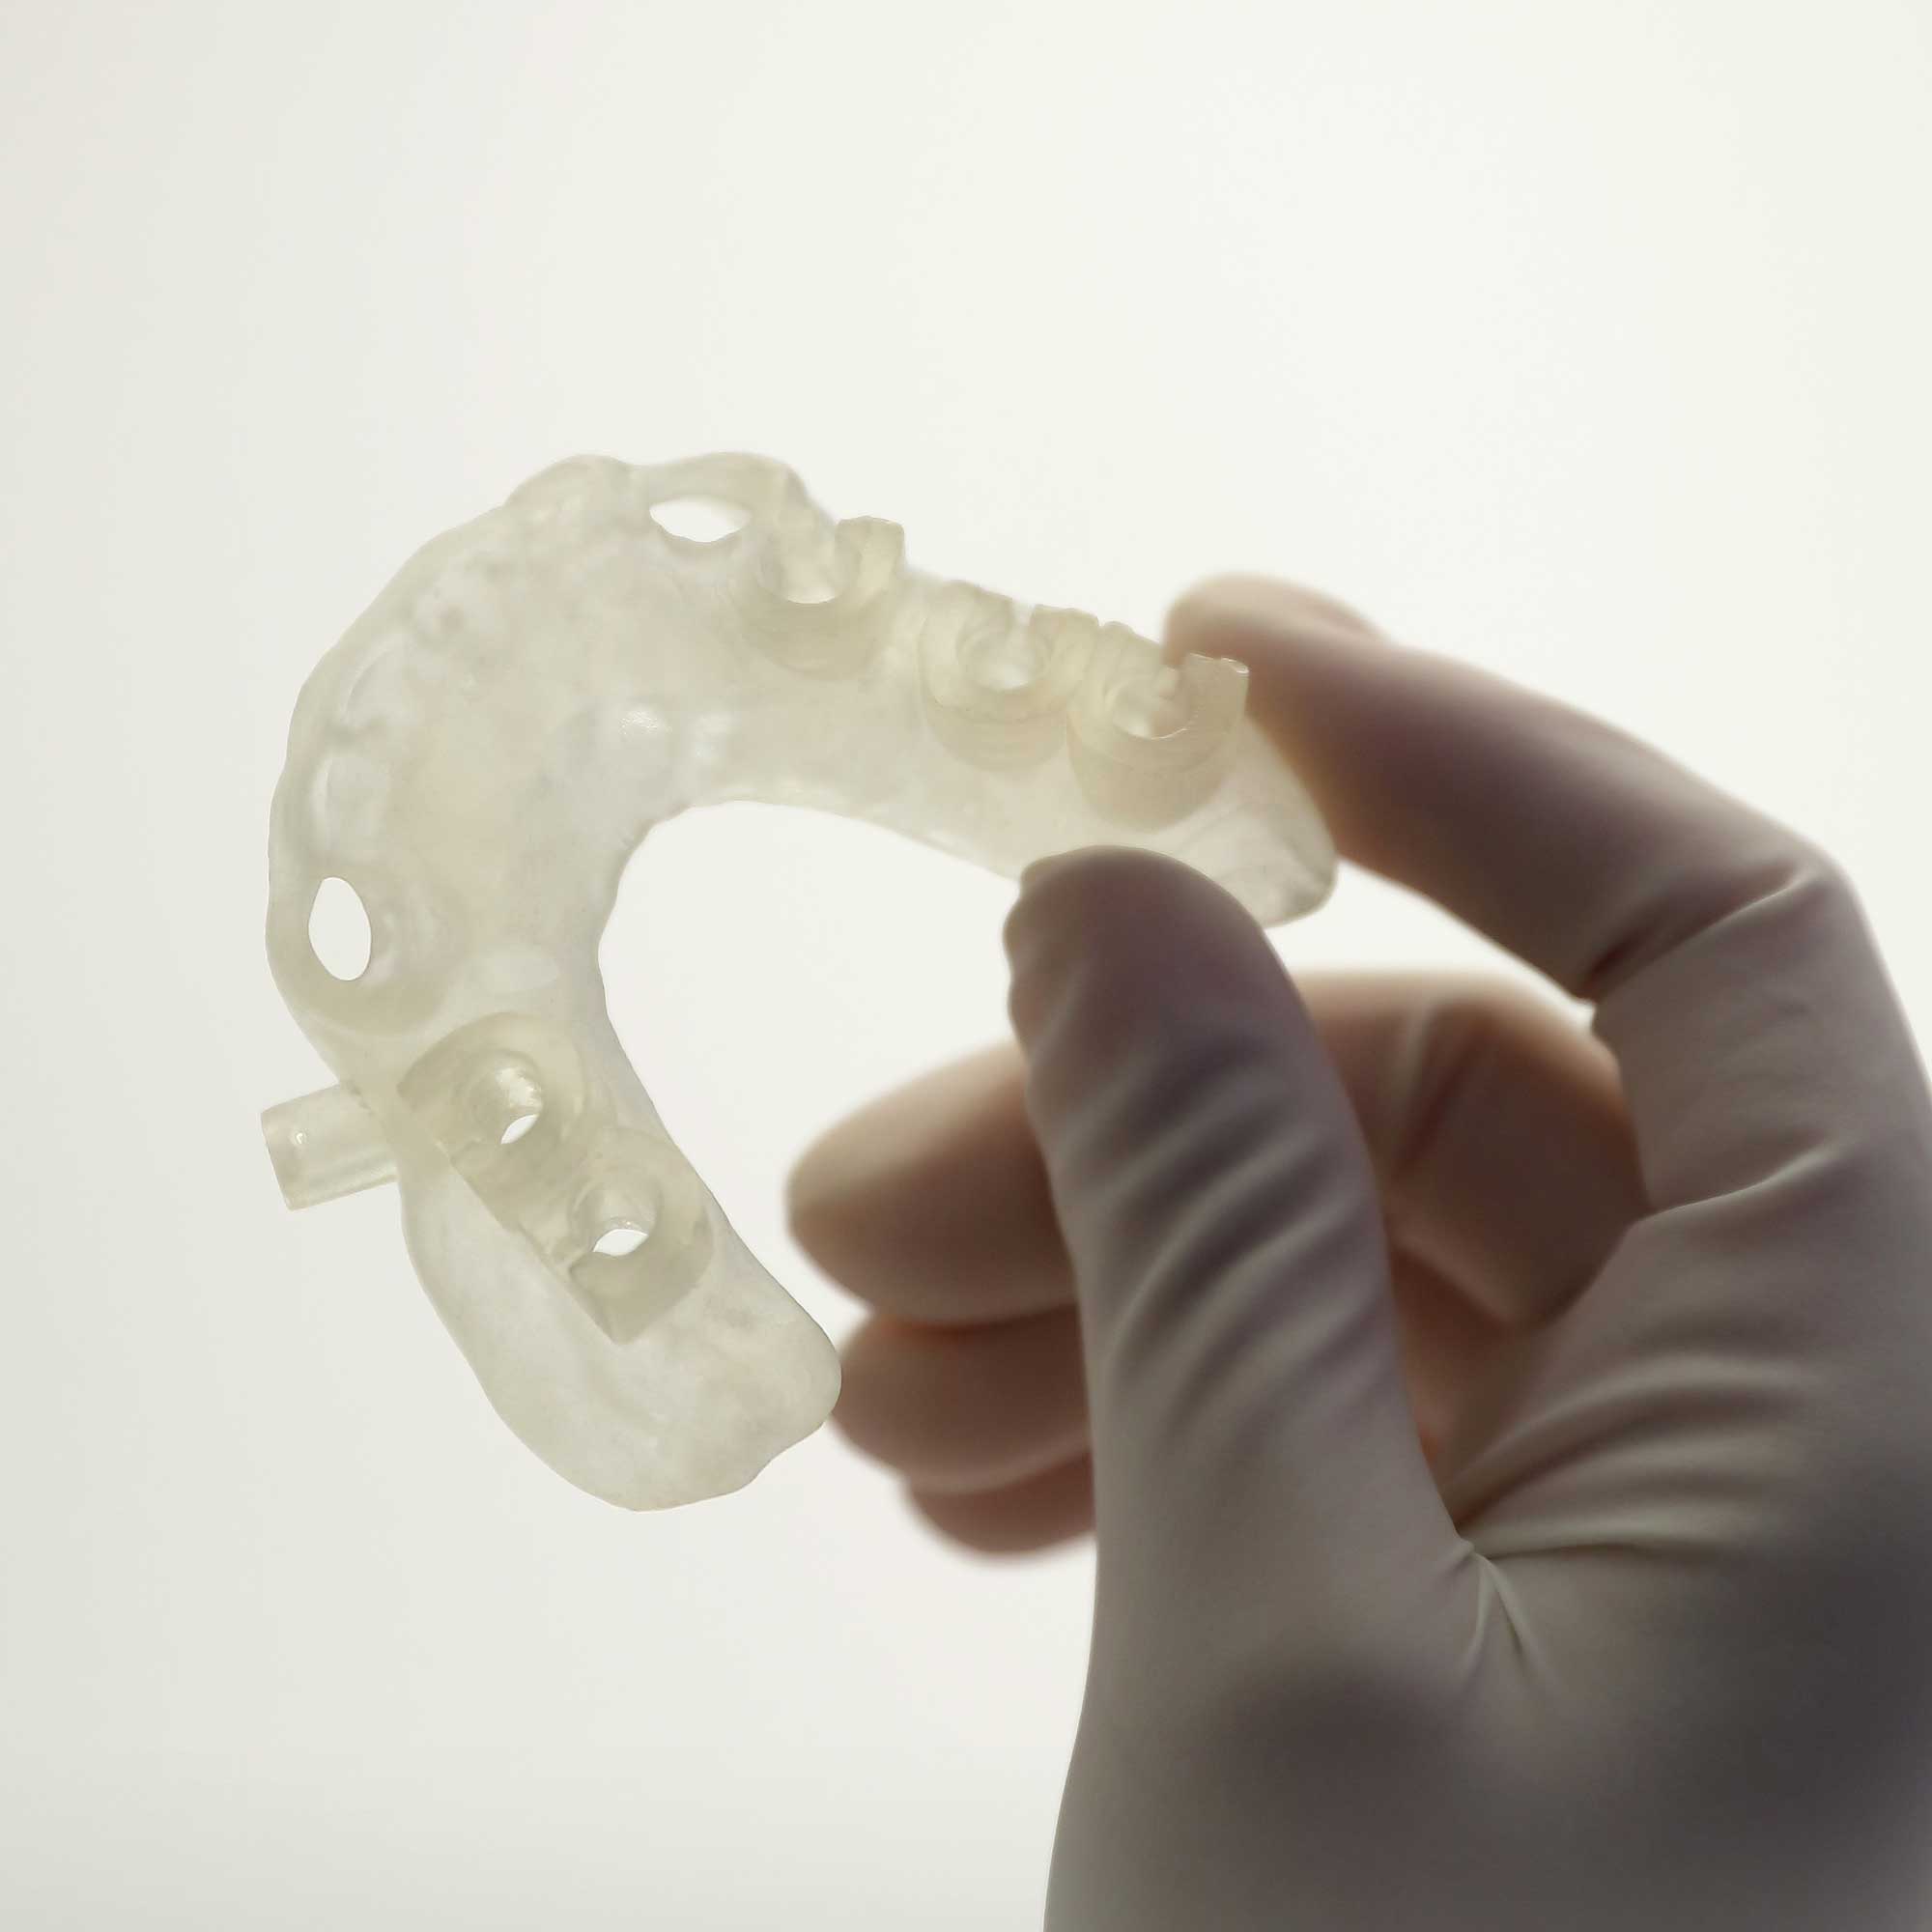 Dłoń trzymająca stomatologiczny szablon chirurgiczny wyprodukowany za pmocą drukarki 3D